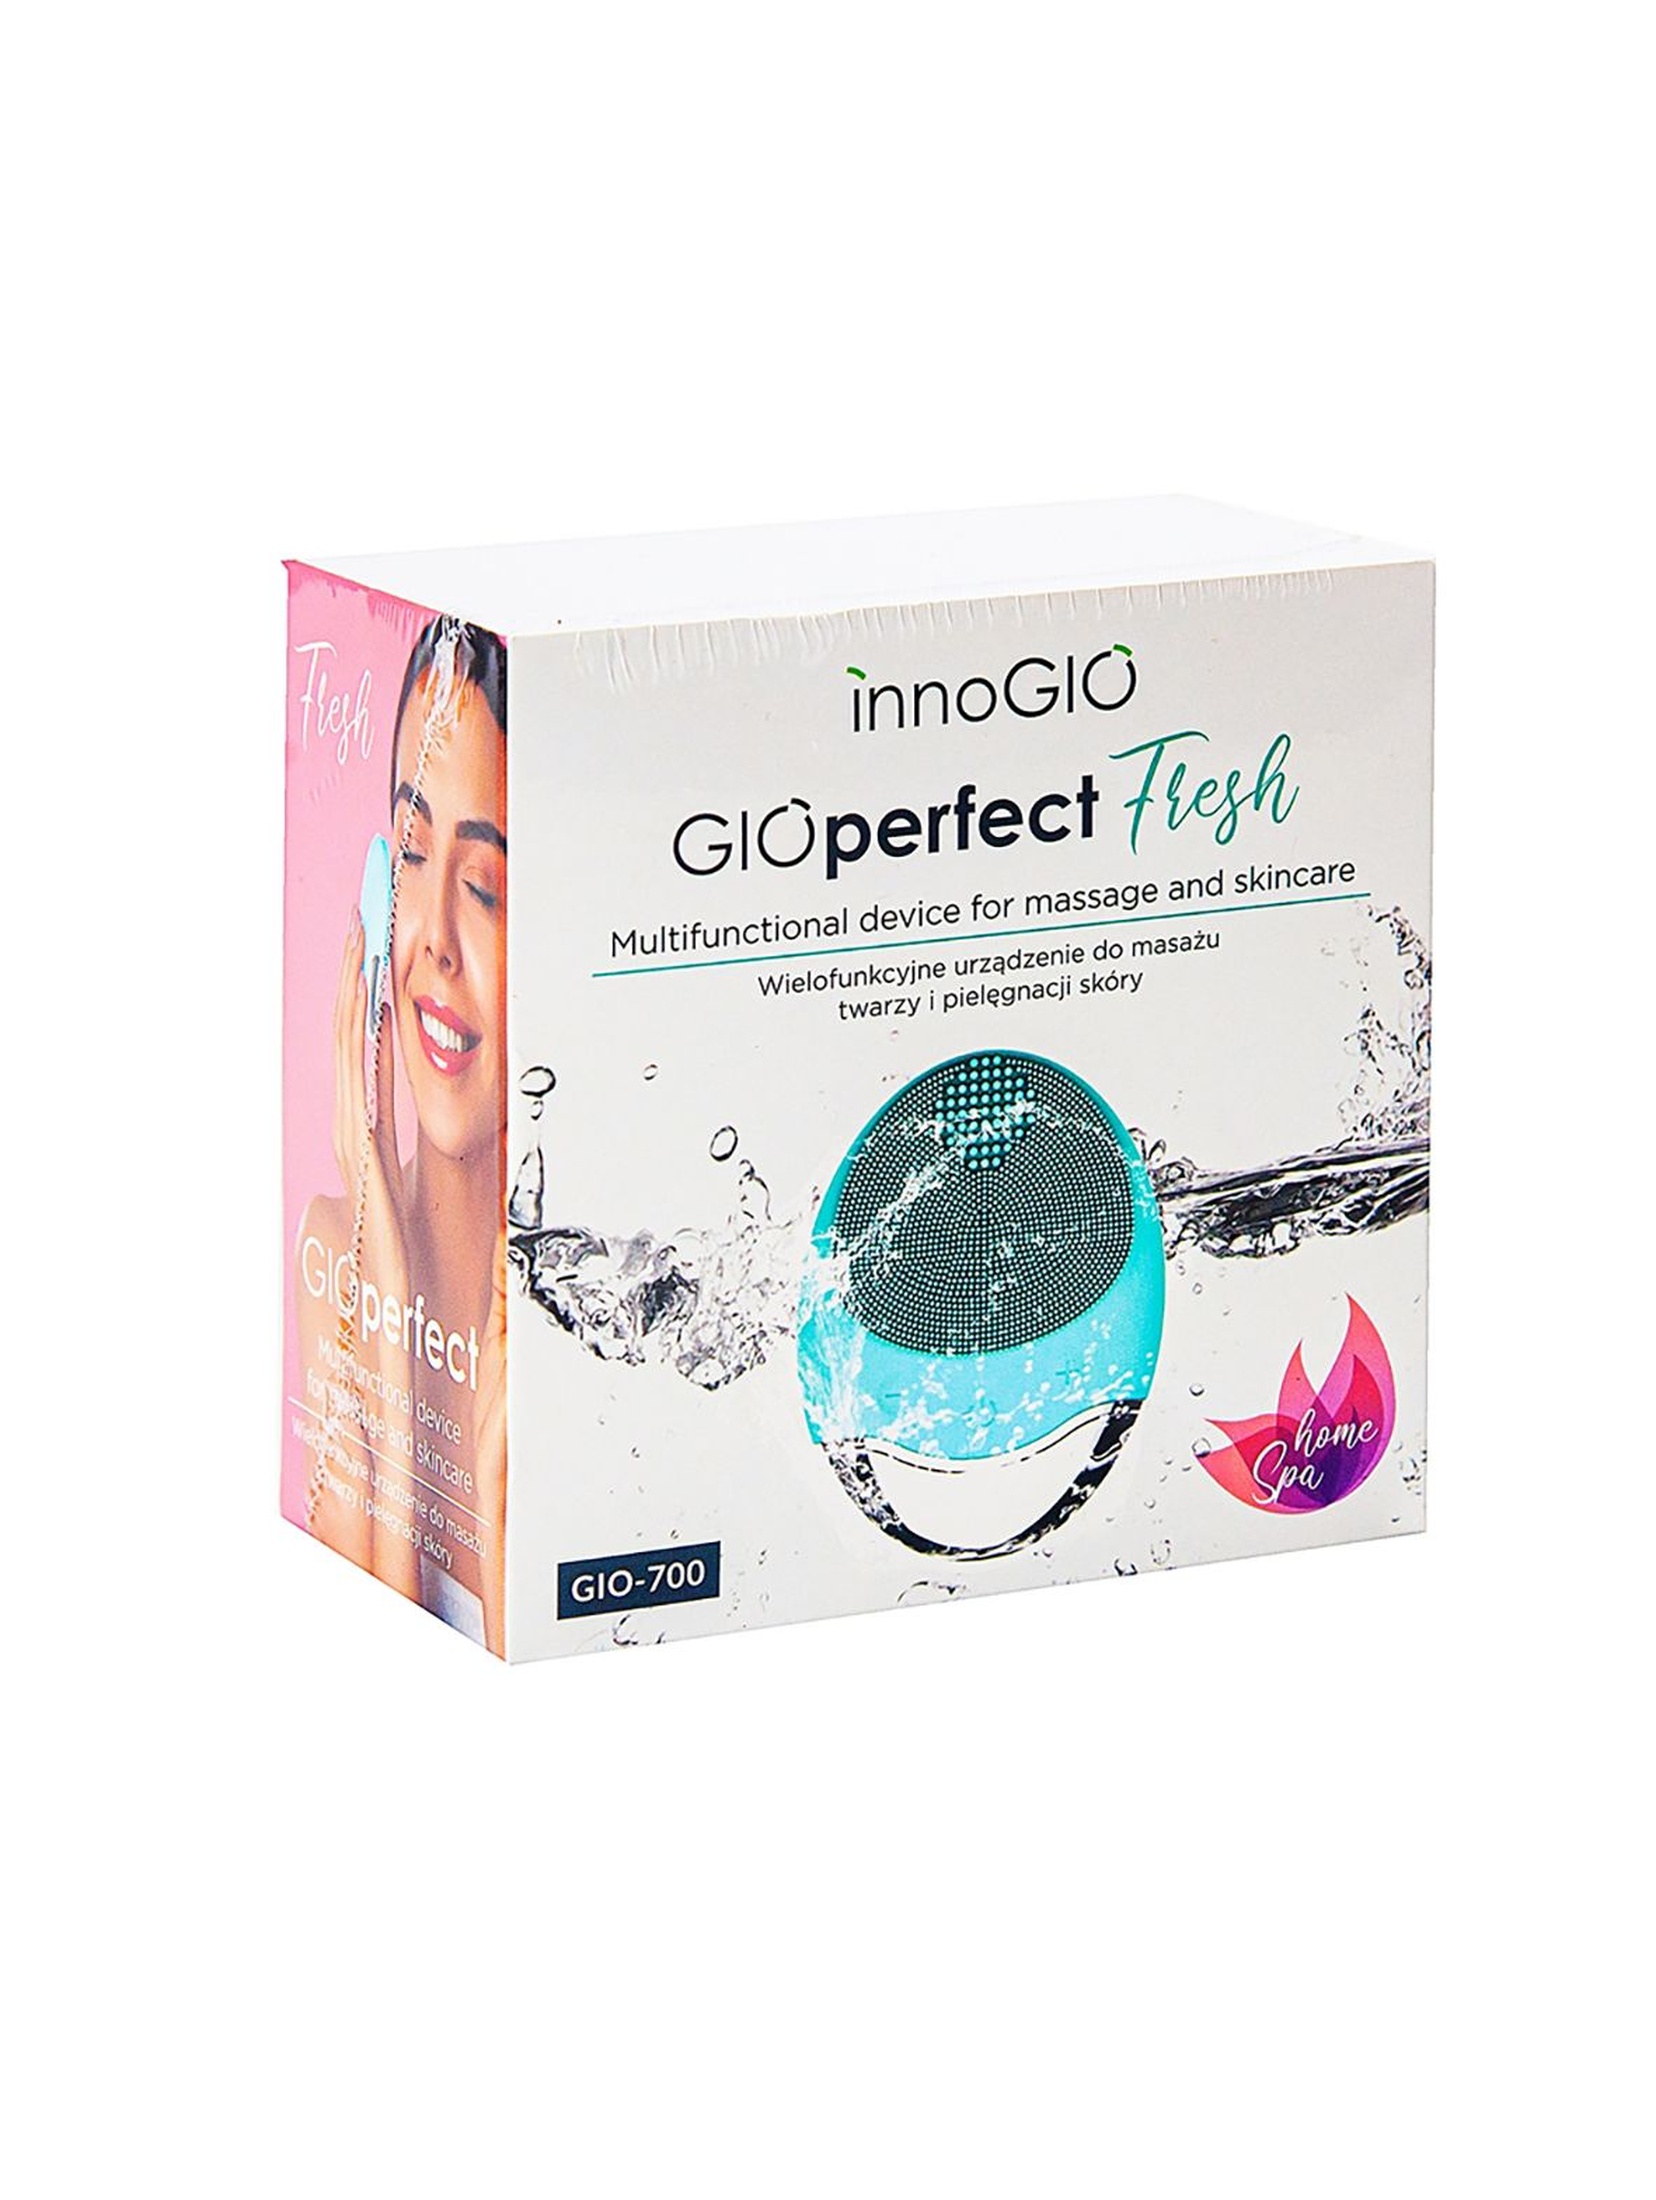 InnoGIO Wielofunkcyjne urządzenie do masażu twarzy i pielęgnacji skóry GIOPERFECT FRESH GIO-700